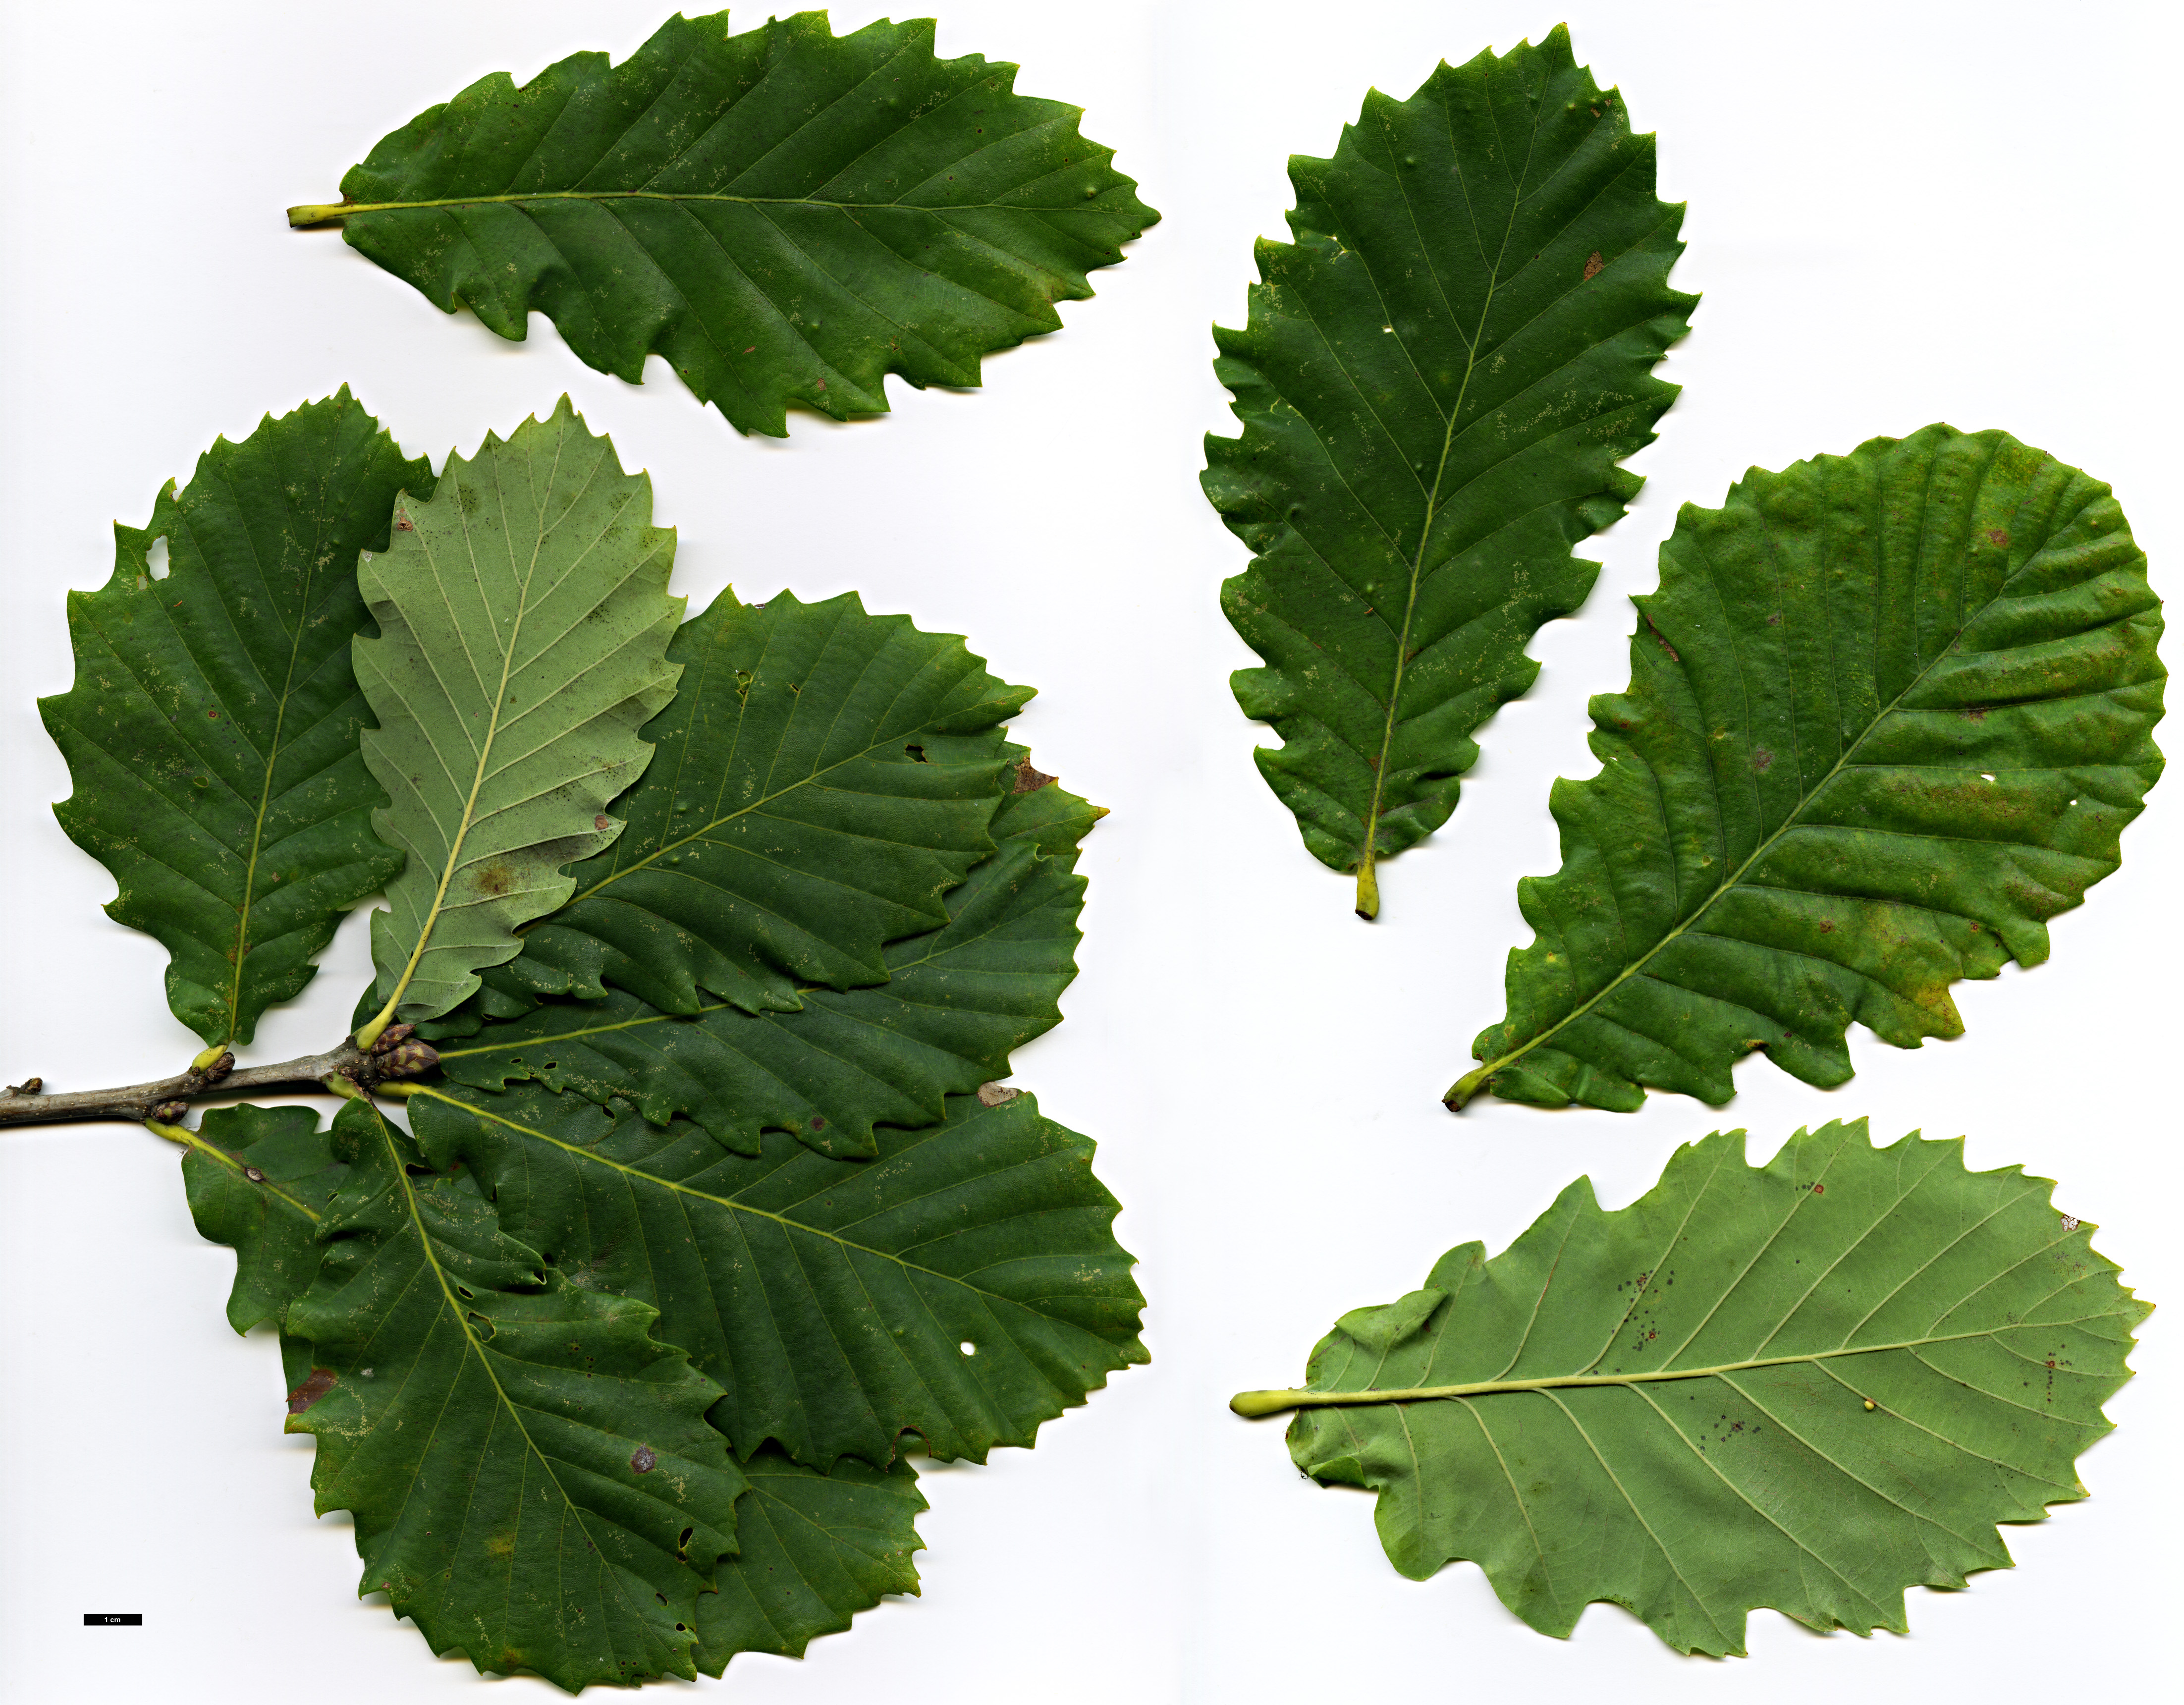 High resolution image: Family: Fagaceae - Genus: Quercus - Taxon: ×hickelii - SpeciesSub: 'Giesselhorst' (Q.pontica × Q.robur)